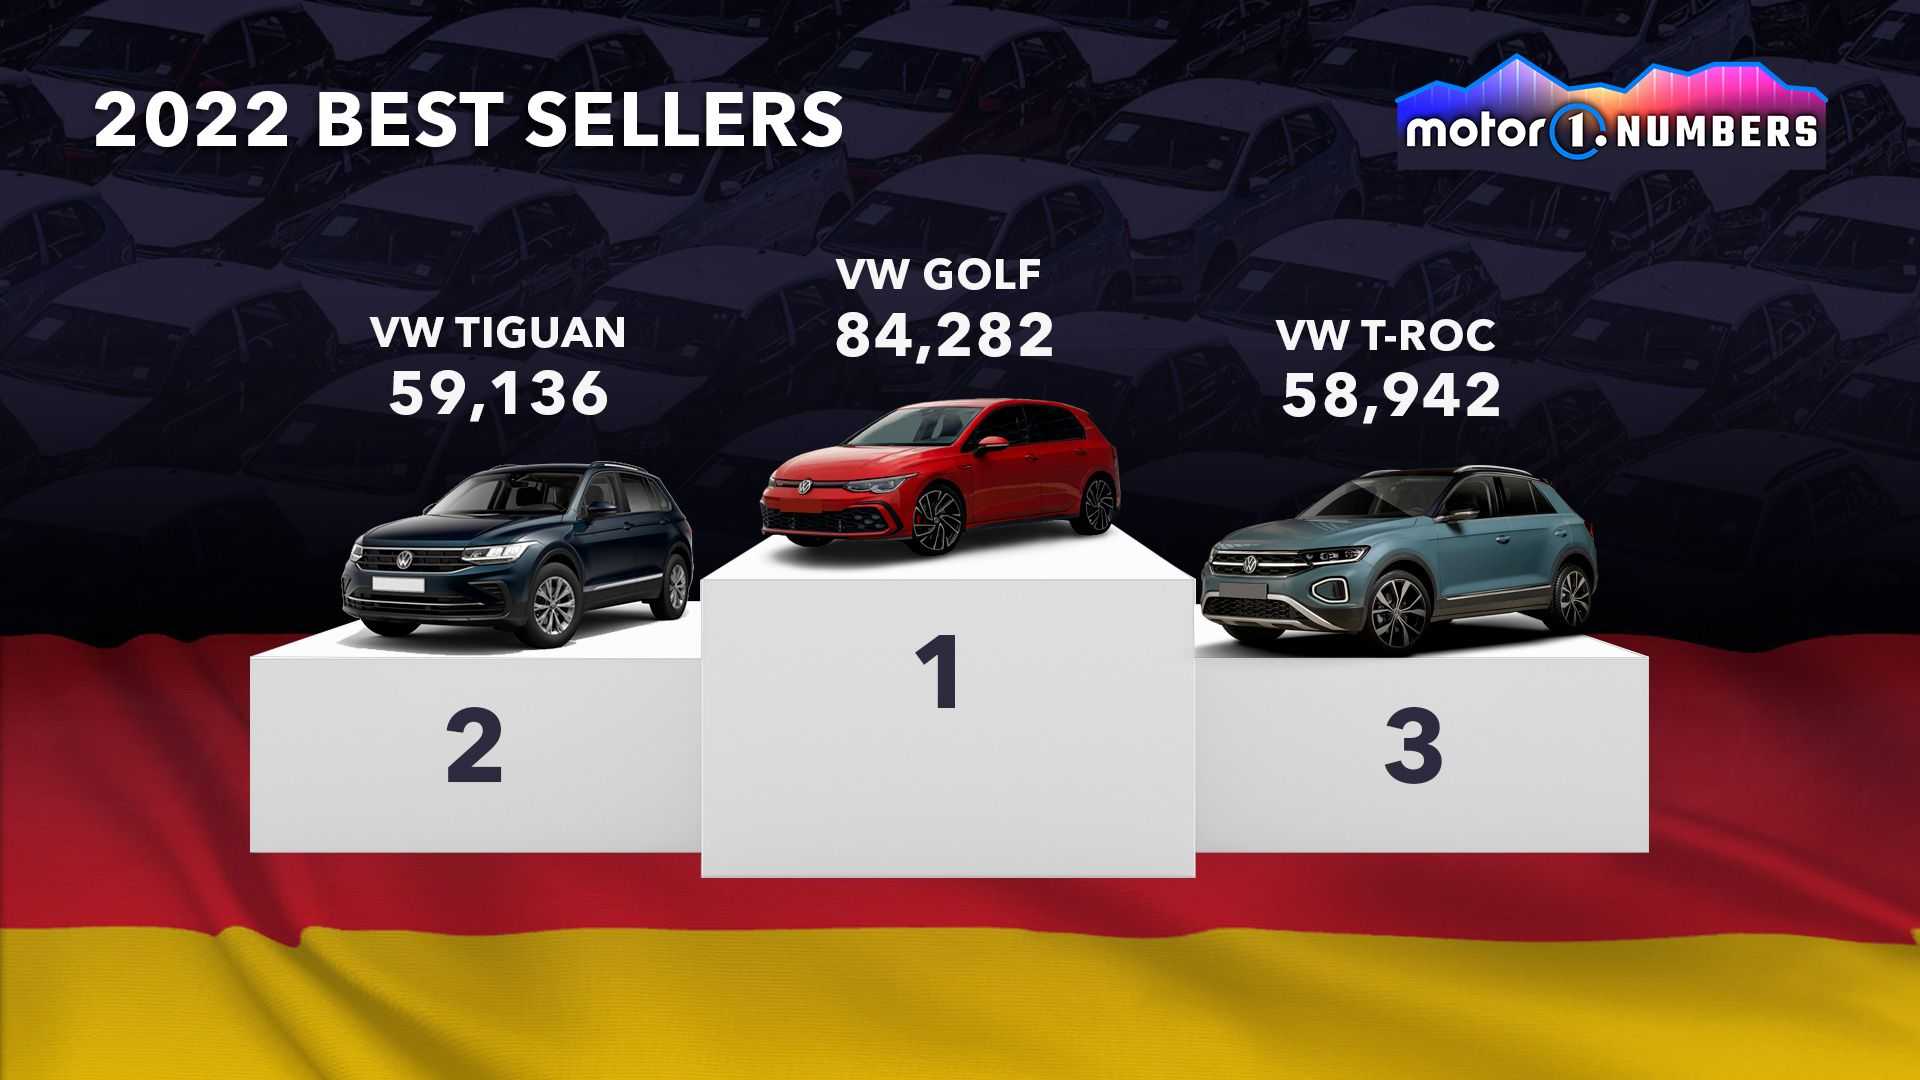 السيارات الأكثر مبيعاً لعام 2022